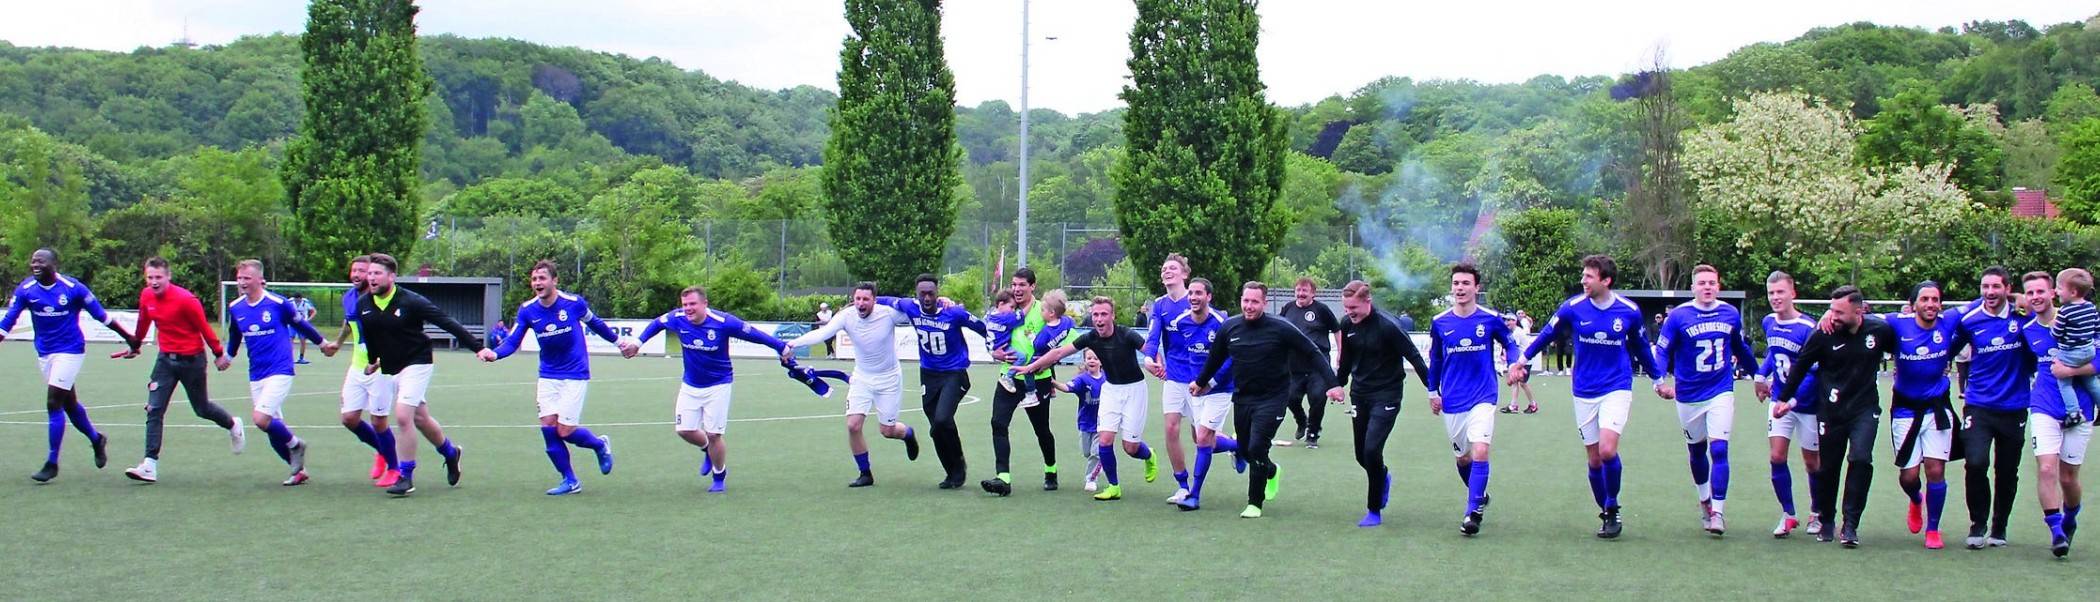 Der TuS im Aufstiegsjubel
Endlich wieder Bezirksliga-Fußball in Gerresheim